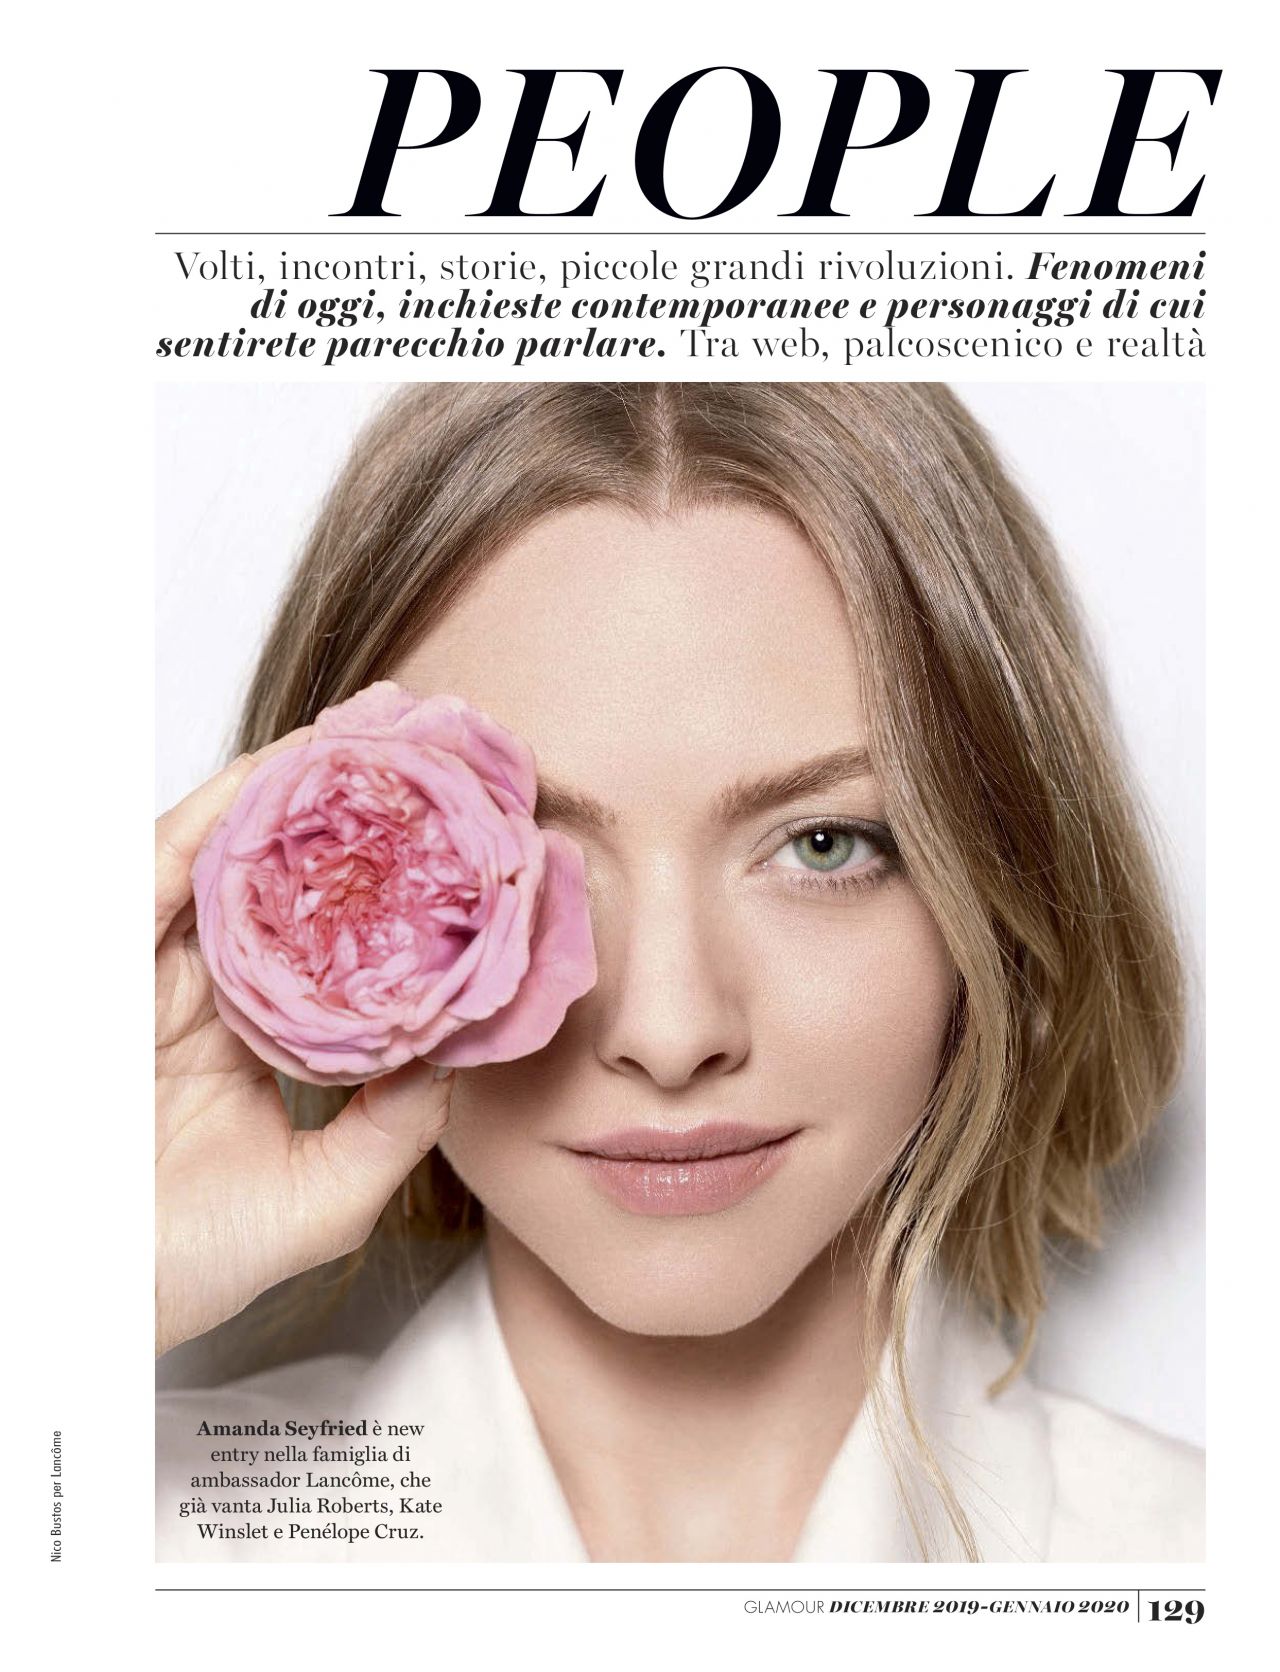 Amanda Seyfried Glamour Magazine Italia December 2019 January 2020